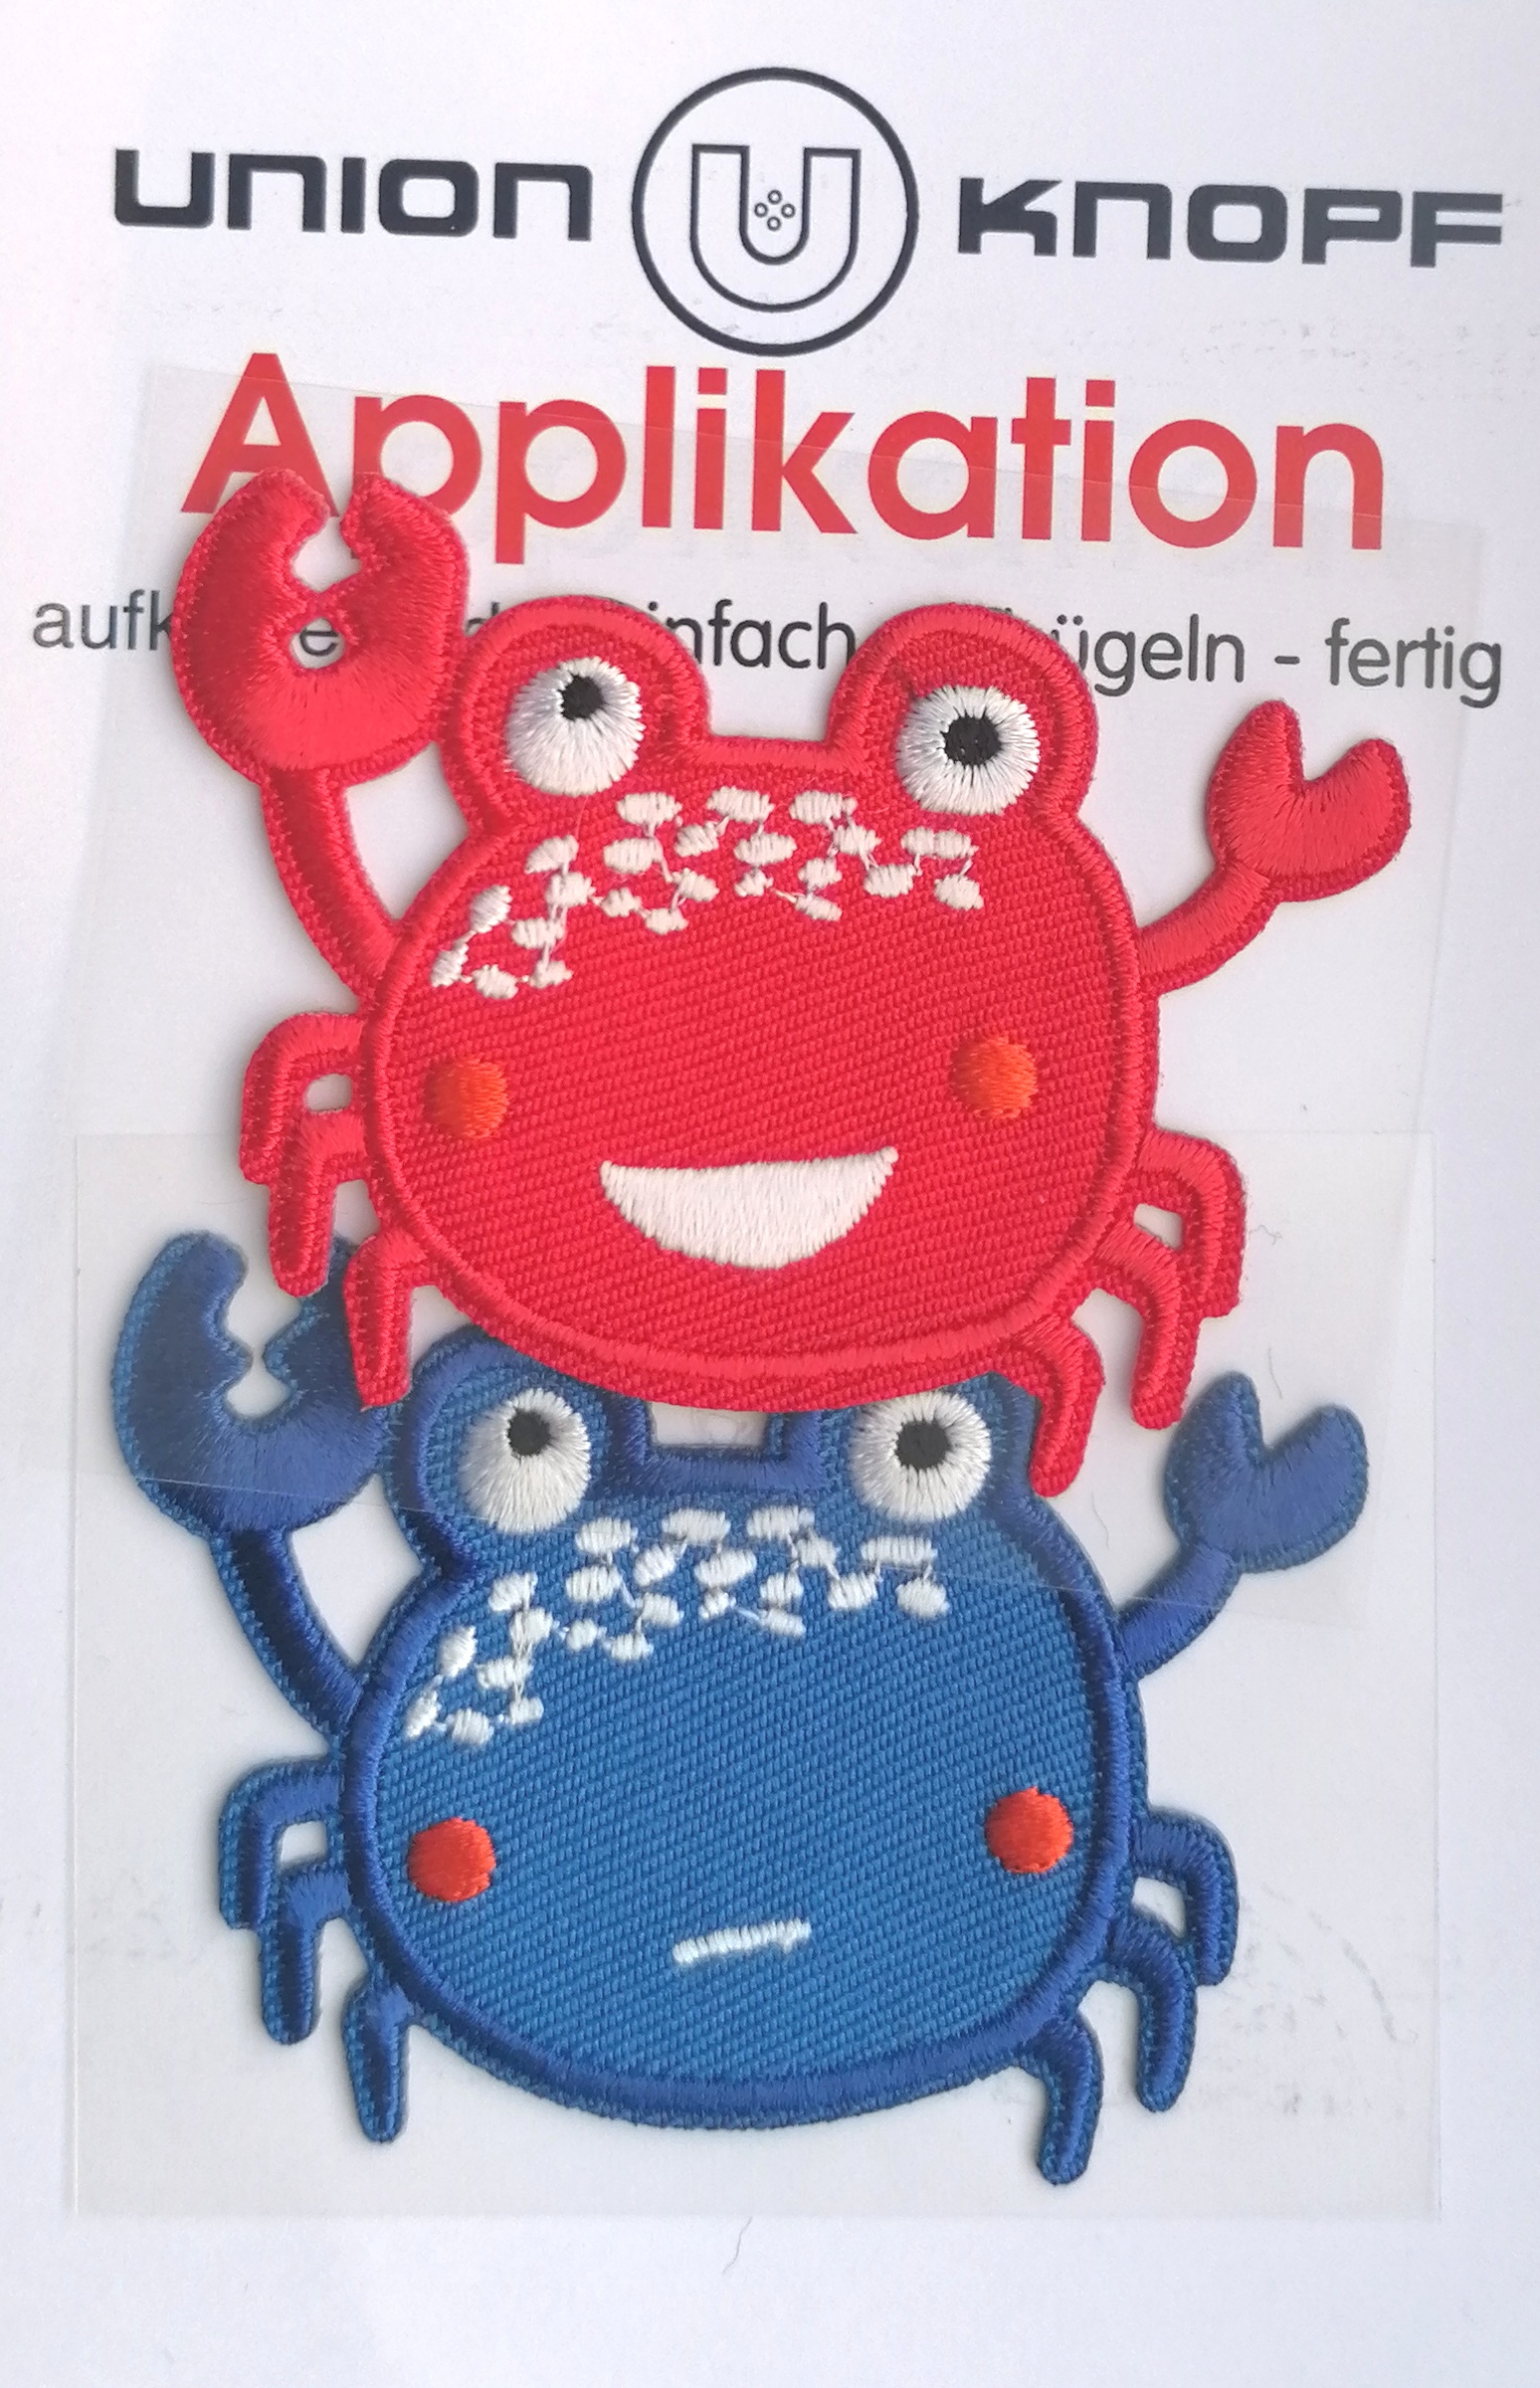 Applicaties - 2 krabben in rood en blauw - 6.8 x 5 cm